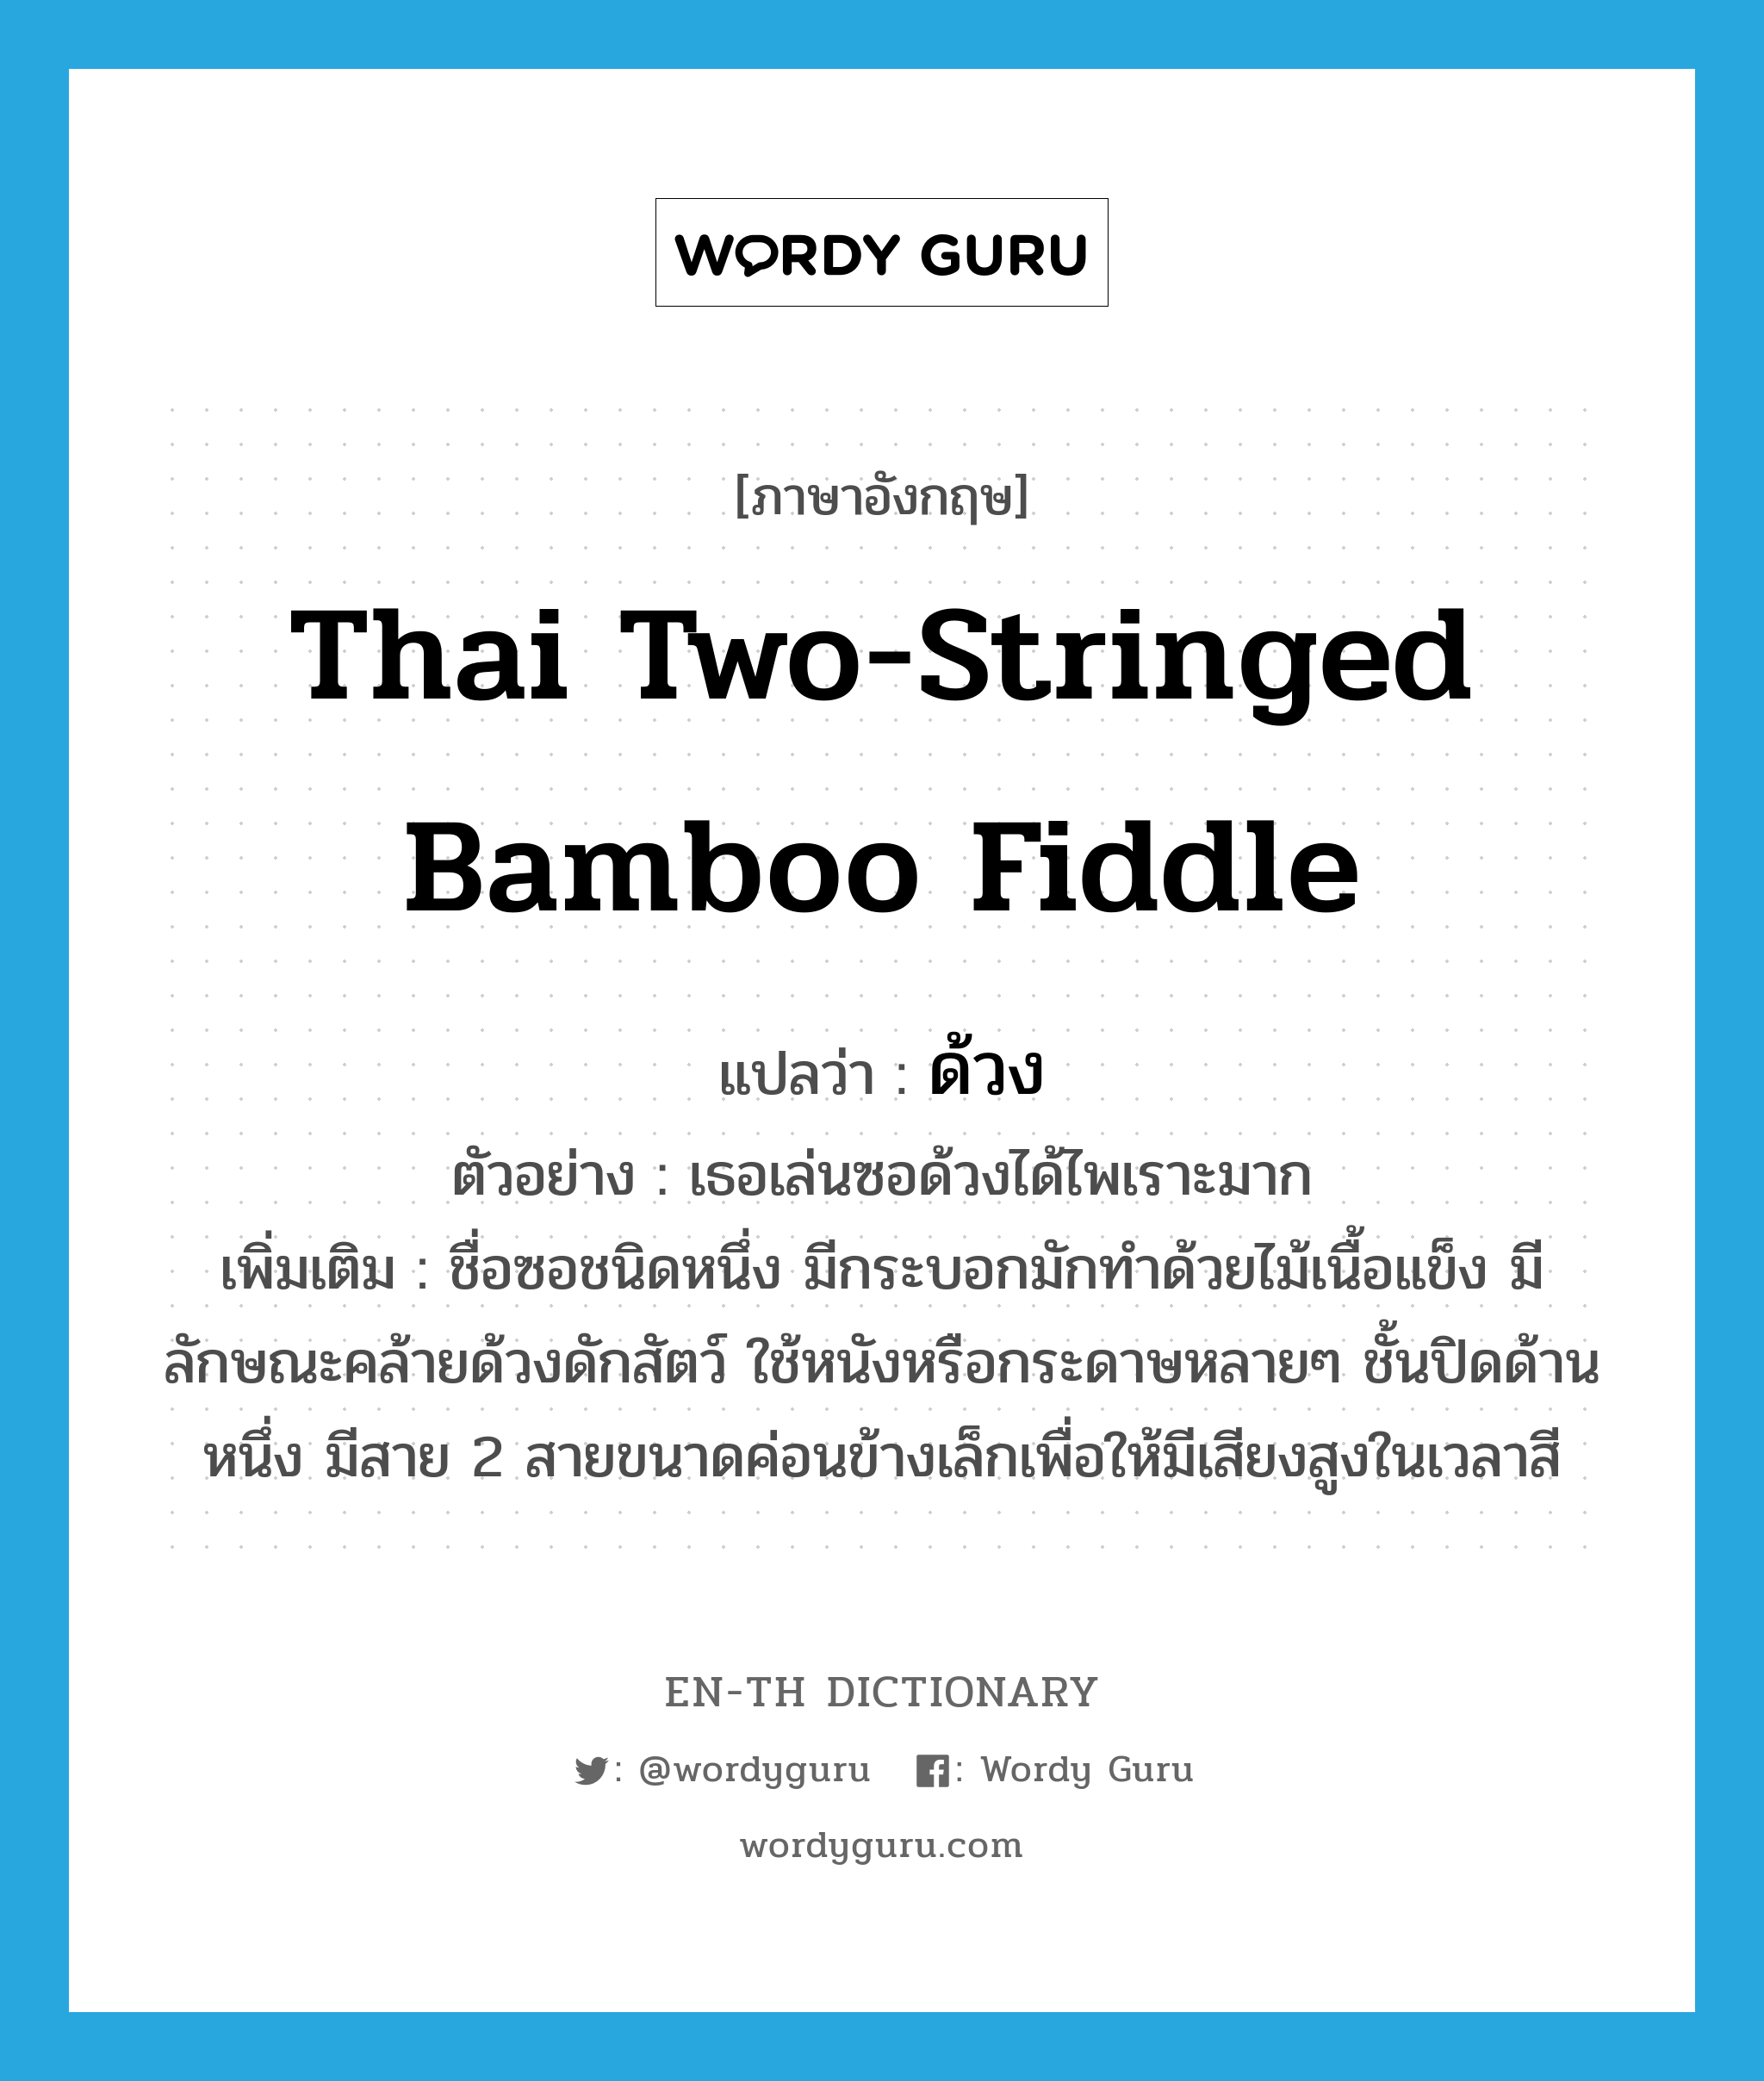 ด้วง ภาษาอังกฤษ?, คำศัพท์ภาษาอังกฤษ ด้วง แปลว่า Thai two-stringed bamboo fiddle ประเภท N ตัวอย่าง เธอเล่นซอด้วงได้ไพเราะมาก เพิ่มเติม ชื่อซอชนิดหนึ่ง มีกระบอกมักทำด้วยไม้เนื้อแข็ง มีลักษณะคล้ายด้วงดักสัตว์ ใช้หนังหรือกระดาษหลายๆ ชั้นปิดด้านหนึ่ง มีสาย 2 สายขนาดค่อนข้างเล็กเพื่อให้มีเสียงสูงในเวลาสี หมวด N